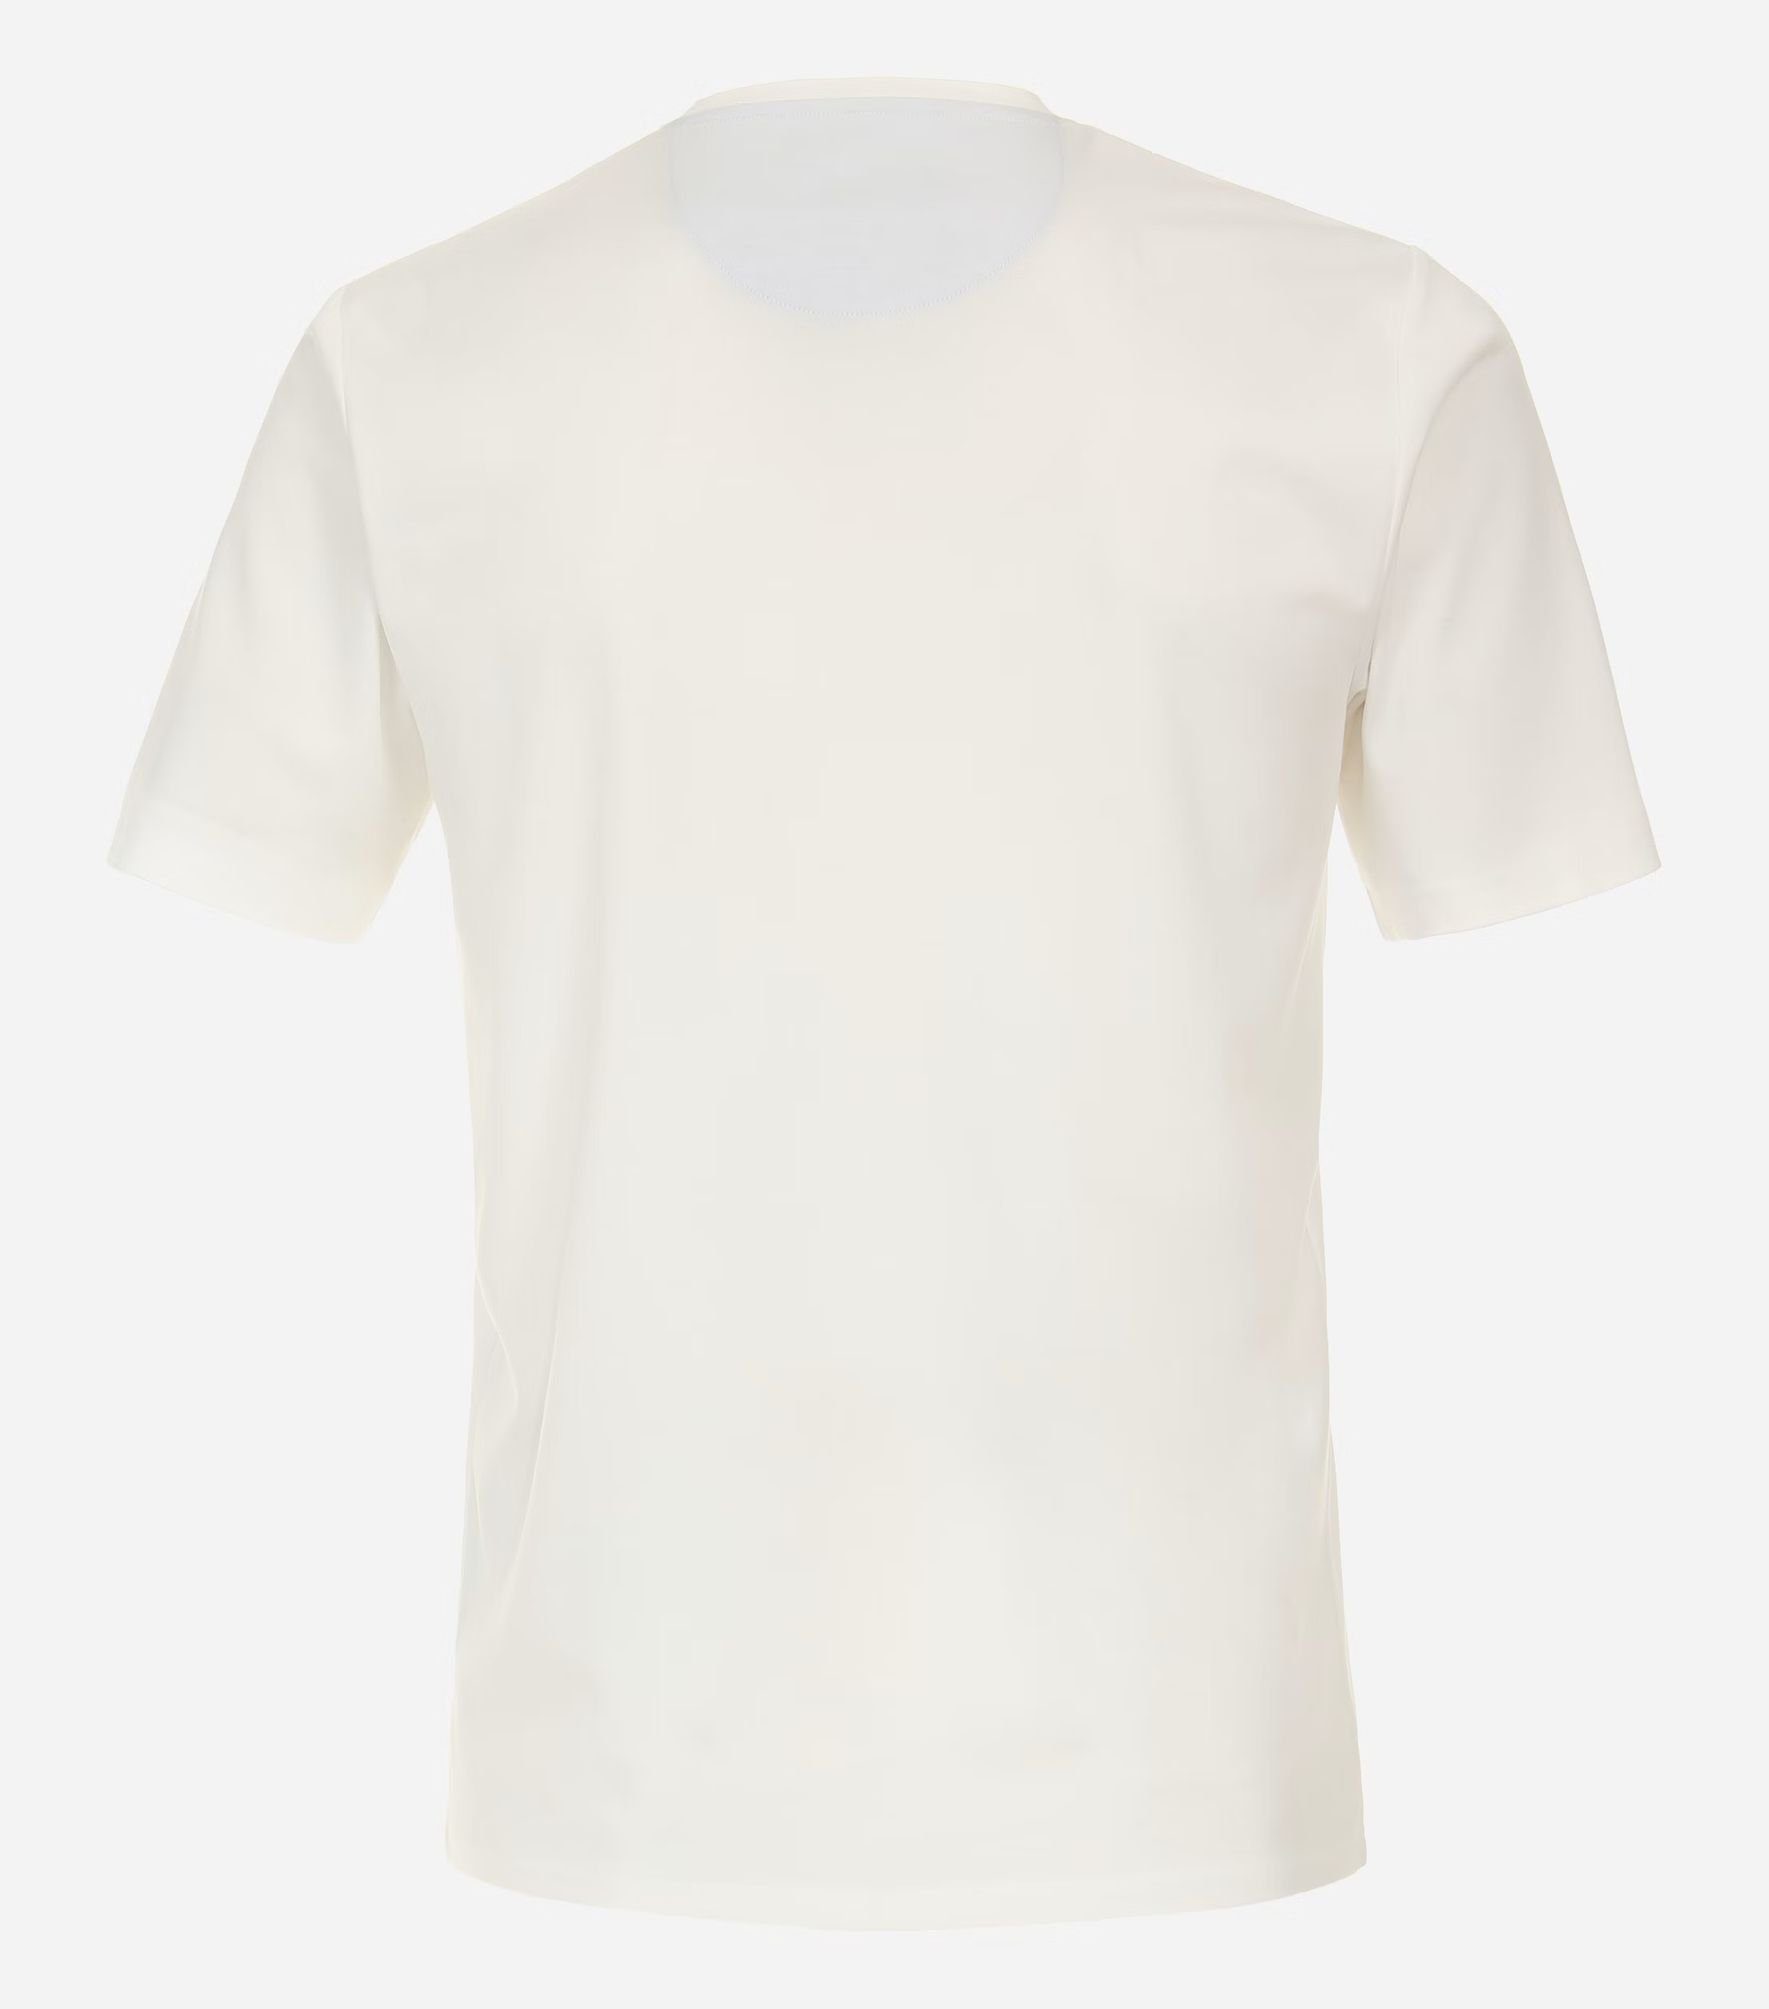 231930650 Weiß(0) pflegeleicht Redmond T-Shirt